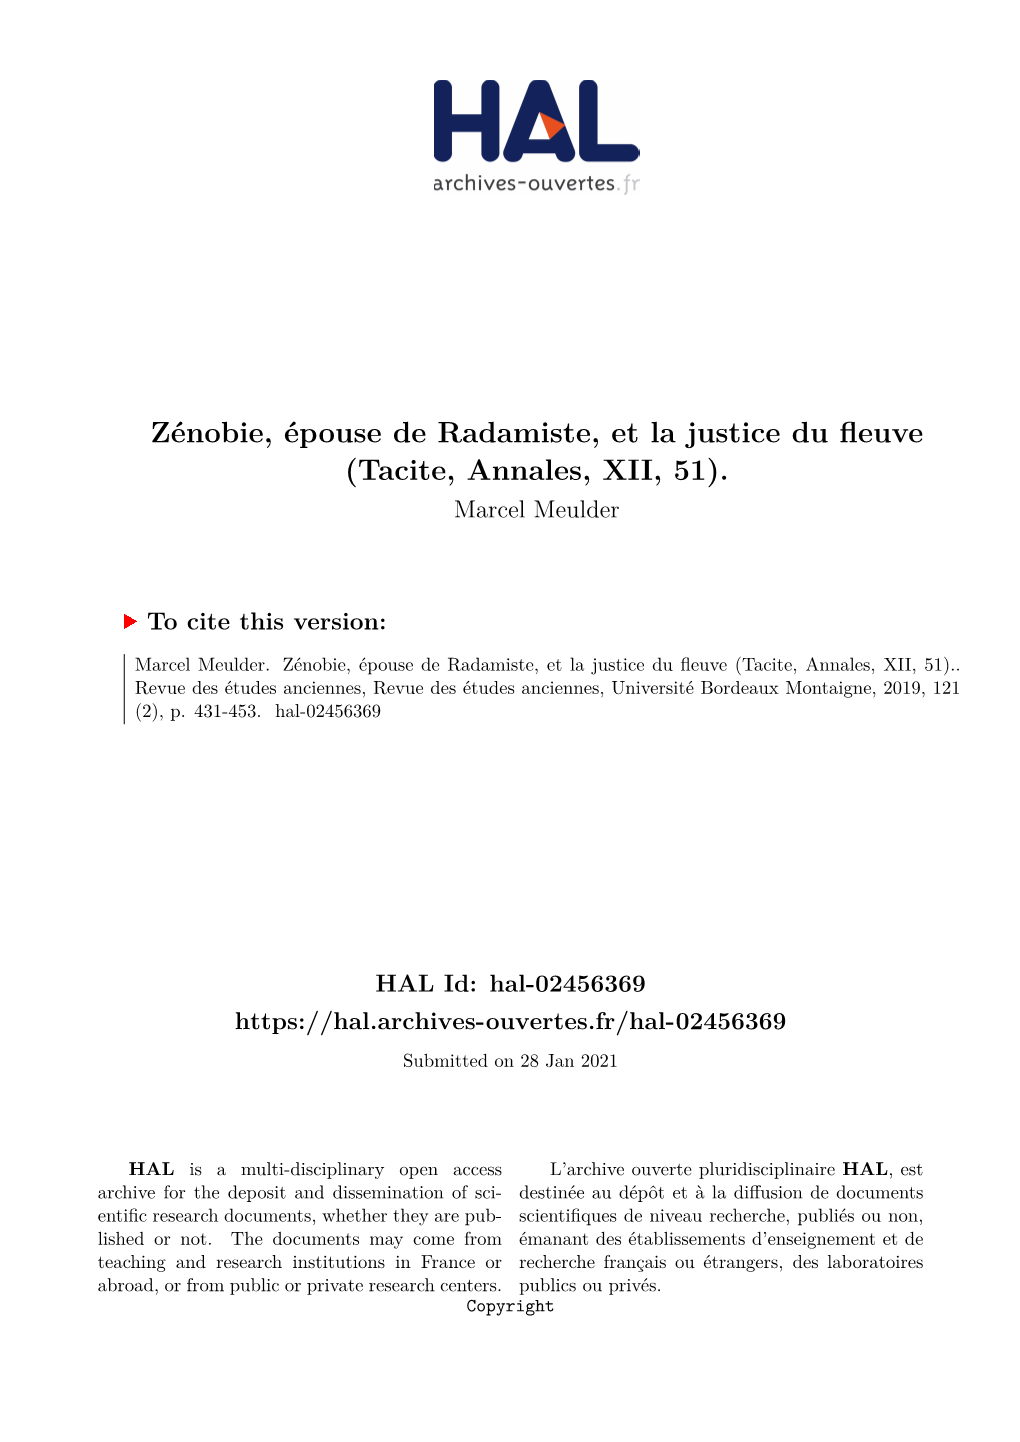 Zénobie, Épouse De Radamiste, Et La Justice Du Fleuve (Tacite, Annales, XII, 51)